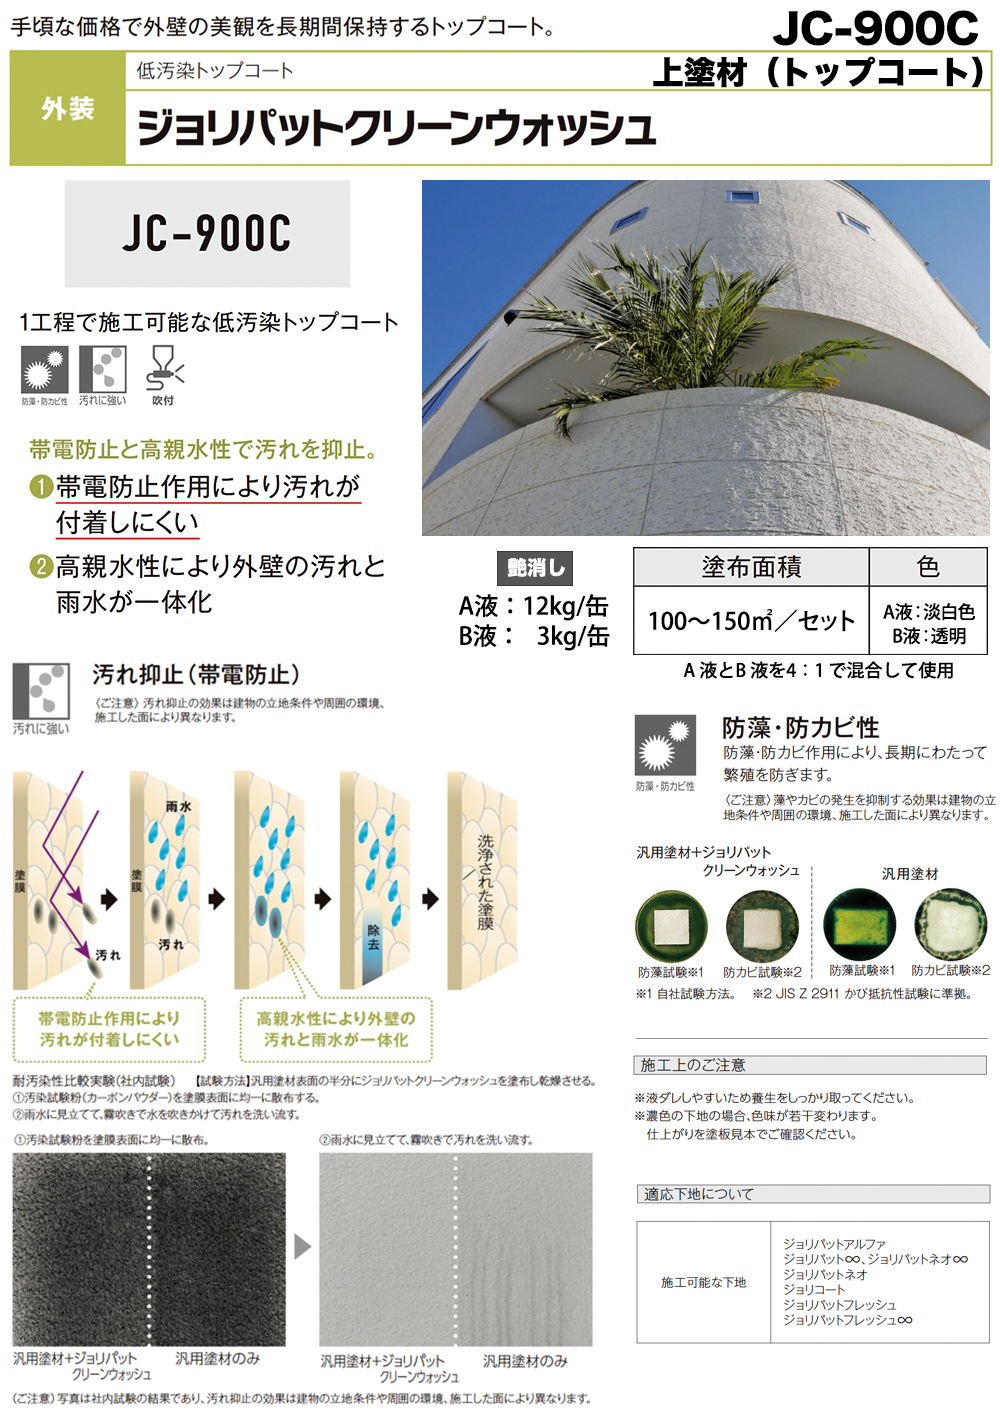 ジョリパットクリーンウォッシュ JC-900C A液 12kg B液 3kg【メーカー 